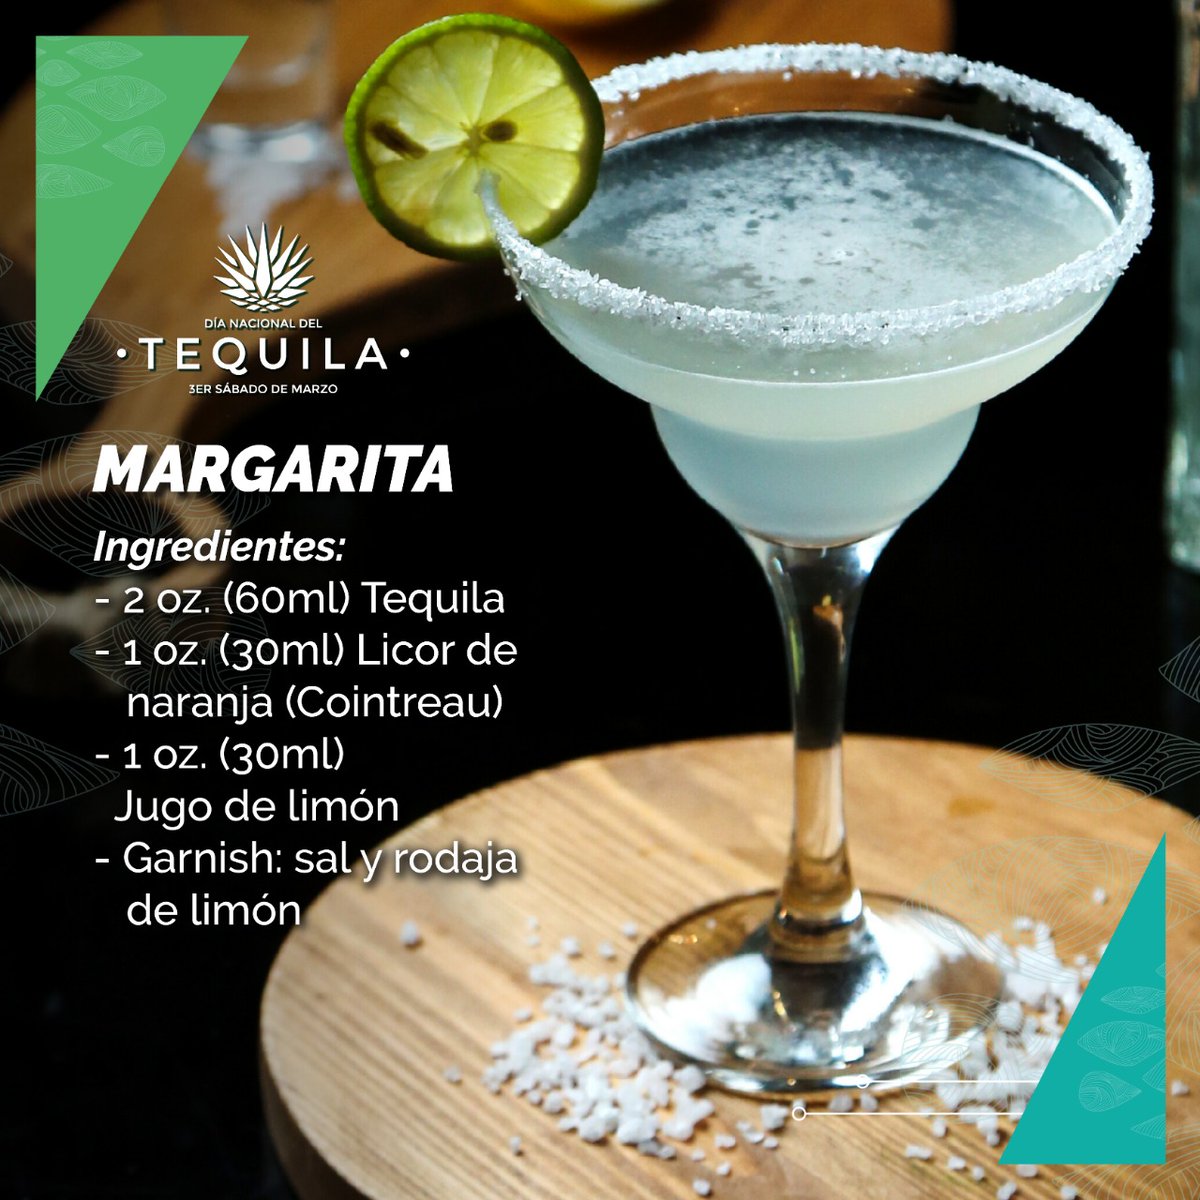 Día Nacional del Tequila a Twitter: "Hoy podrías preparar en casa la receta del coctel más consumido el mundo, la Margarita ¡Disfrútalo! MARGARITA 2 oz. (60ml) 1 oz. (30ml) Licor